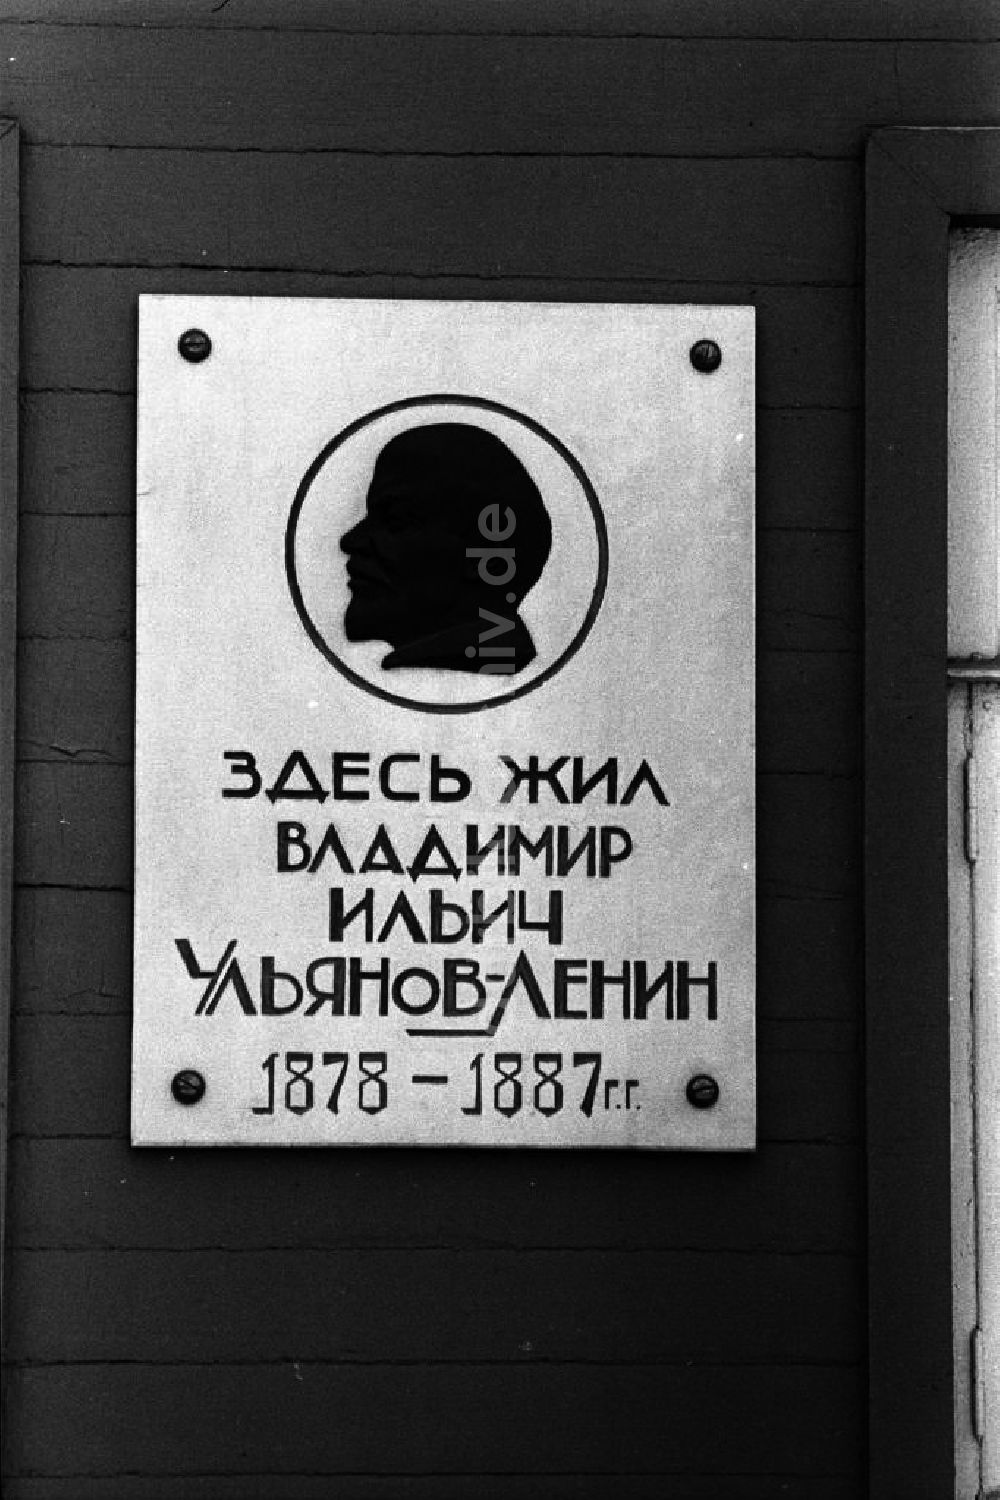 DDR-Bildarchiv: Uljanowsk - Gedenktafel am Wohnhaus von Lenin - Museum in Uljanowsk